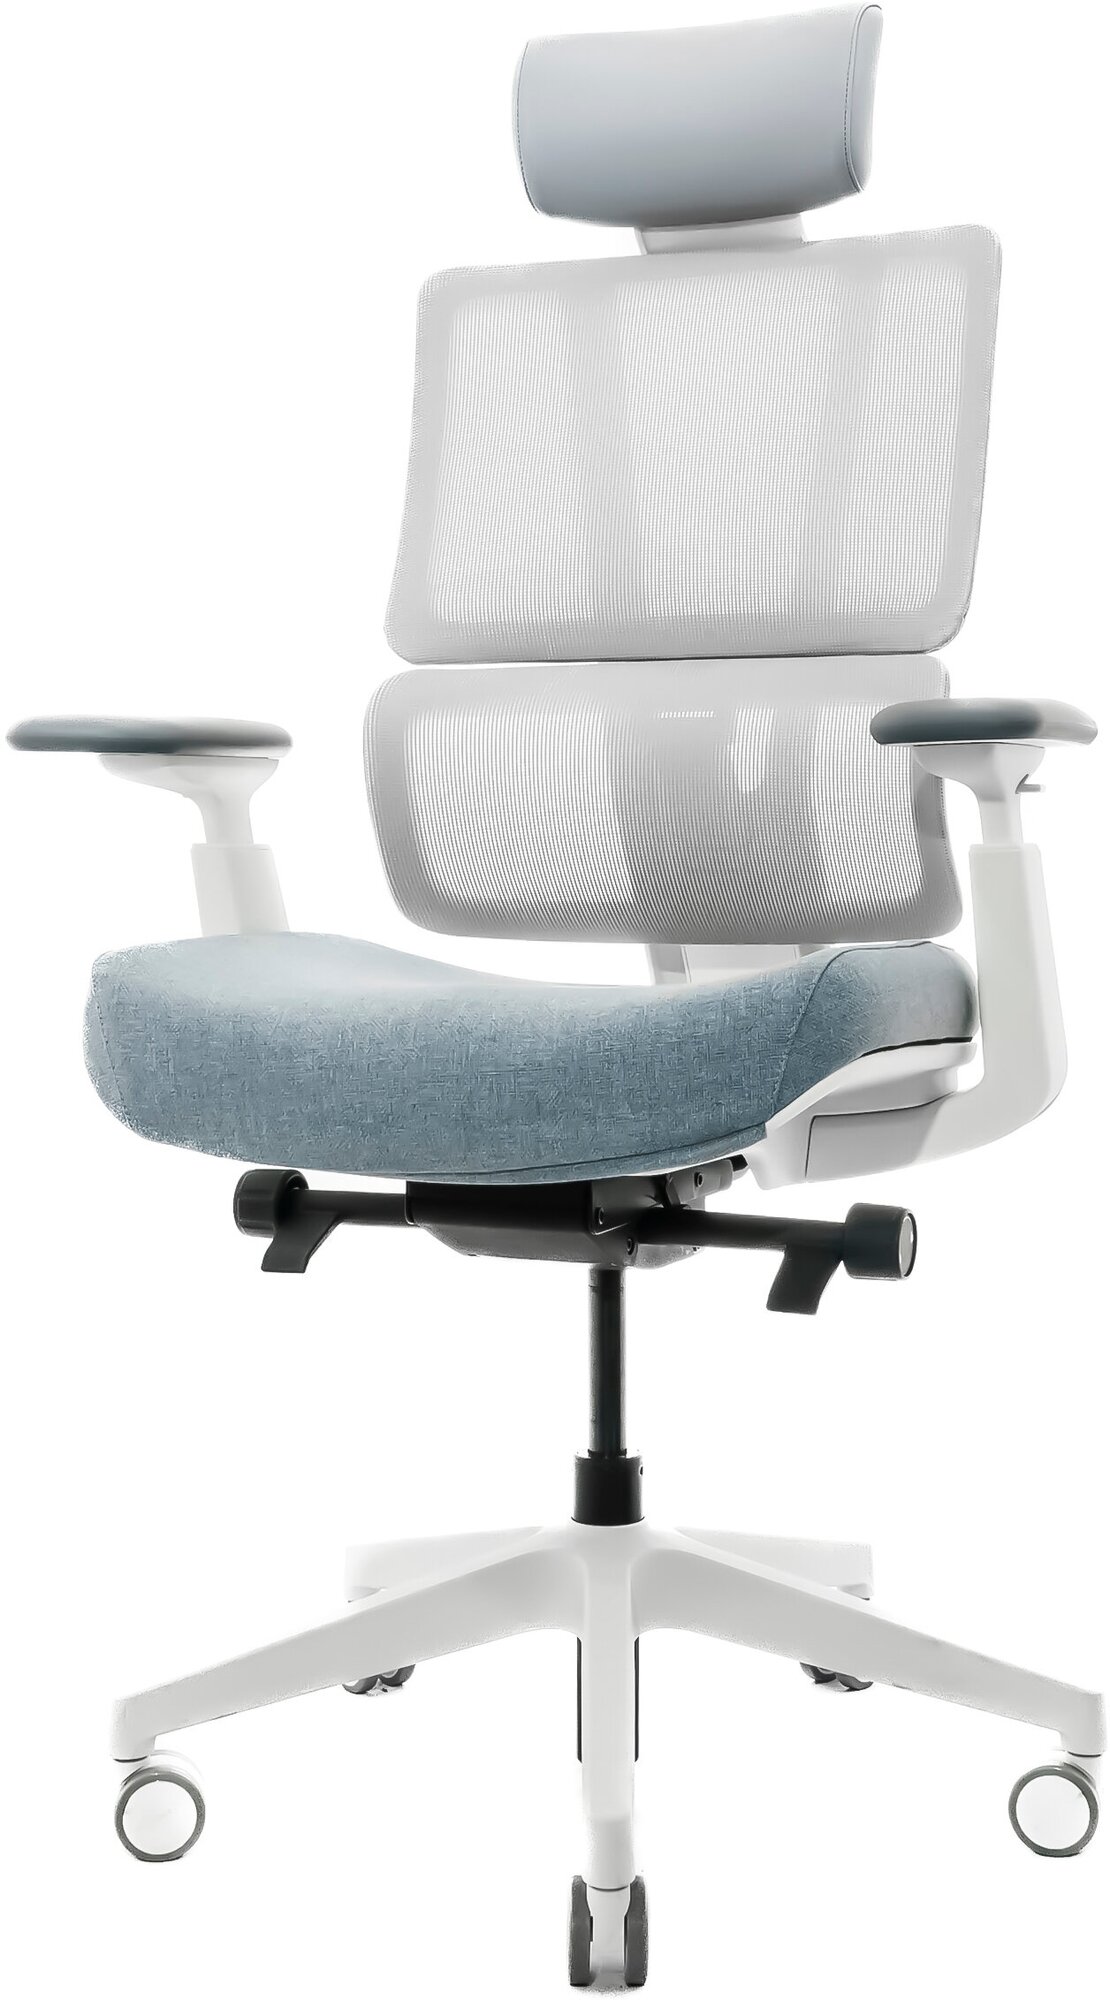 Эргономичное кресло G2 PRO, обивка серая, каркас белый